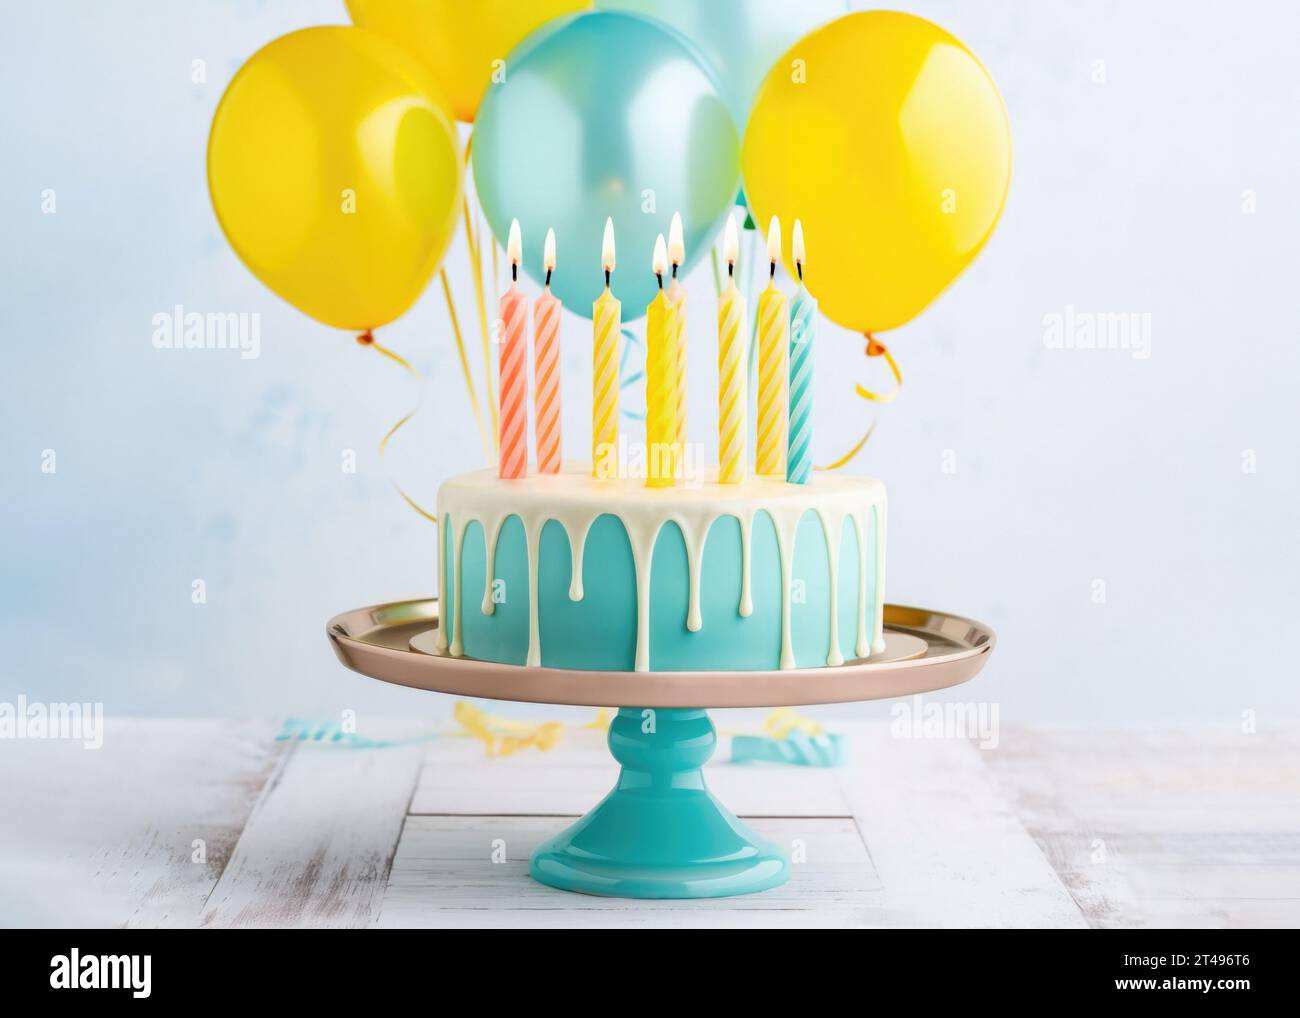 Geburtstagskuchen mit weißer Zuckerglasur, vielen Geburtstagskerzen und einem Haufen Partyballons Stockfoto